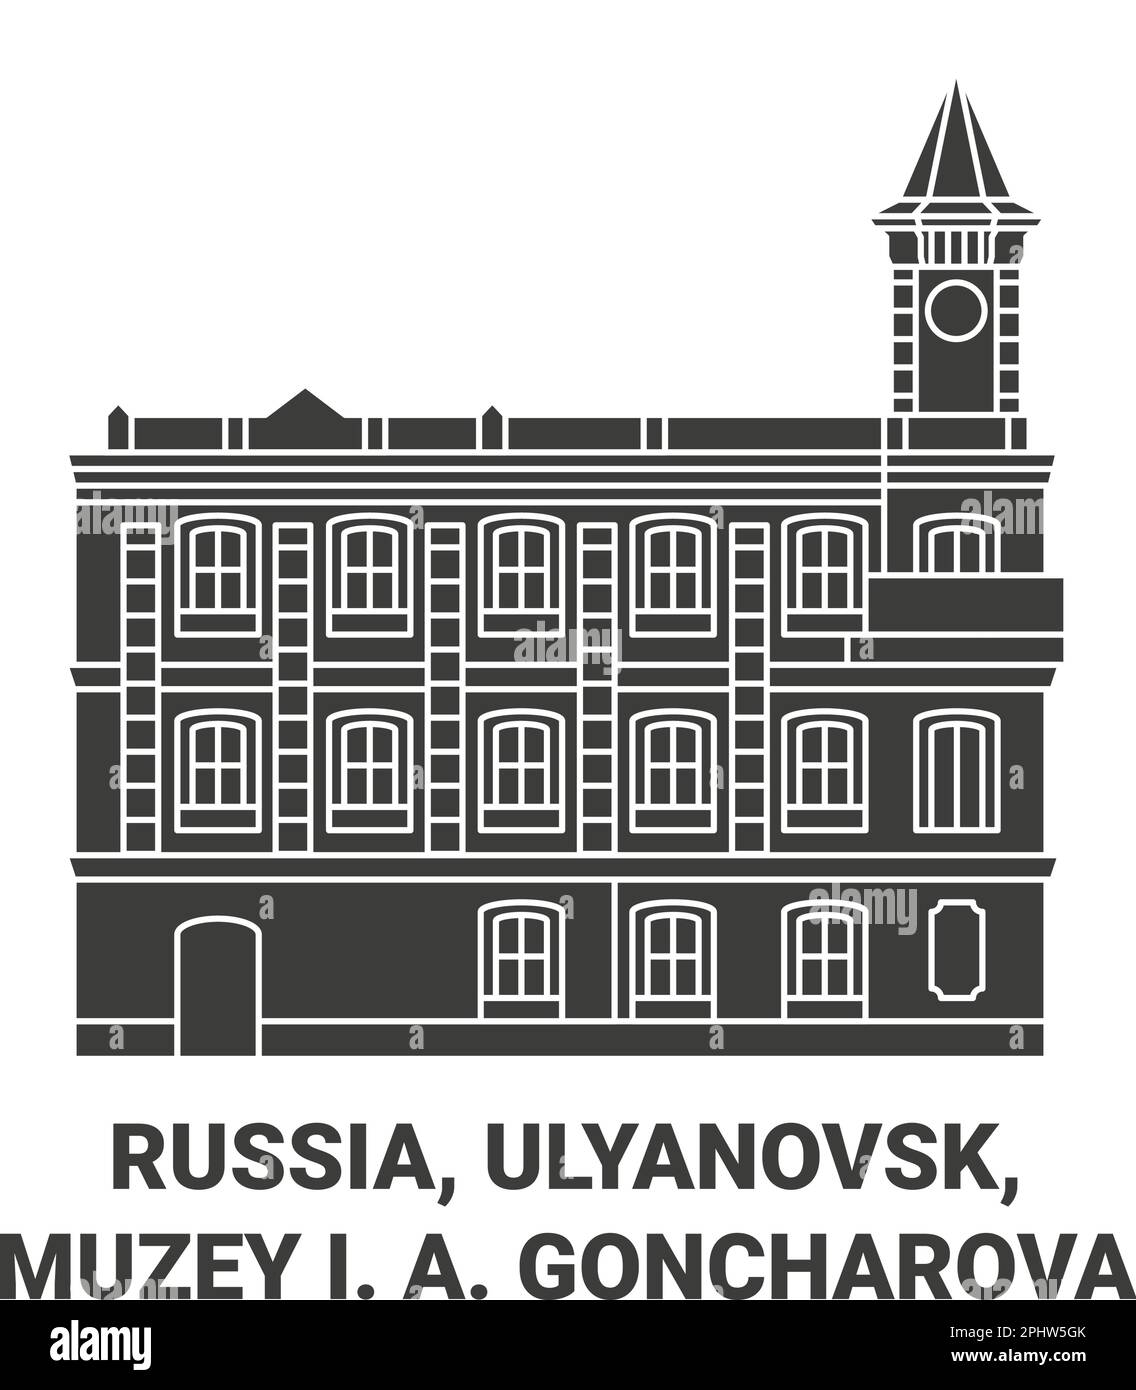 Russland, Ulyanovsk, Muzey I. A. Goncharova Reise Landmark Vektordarstellung Stock Vektor